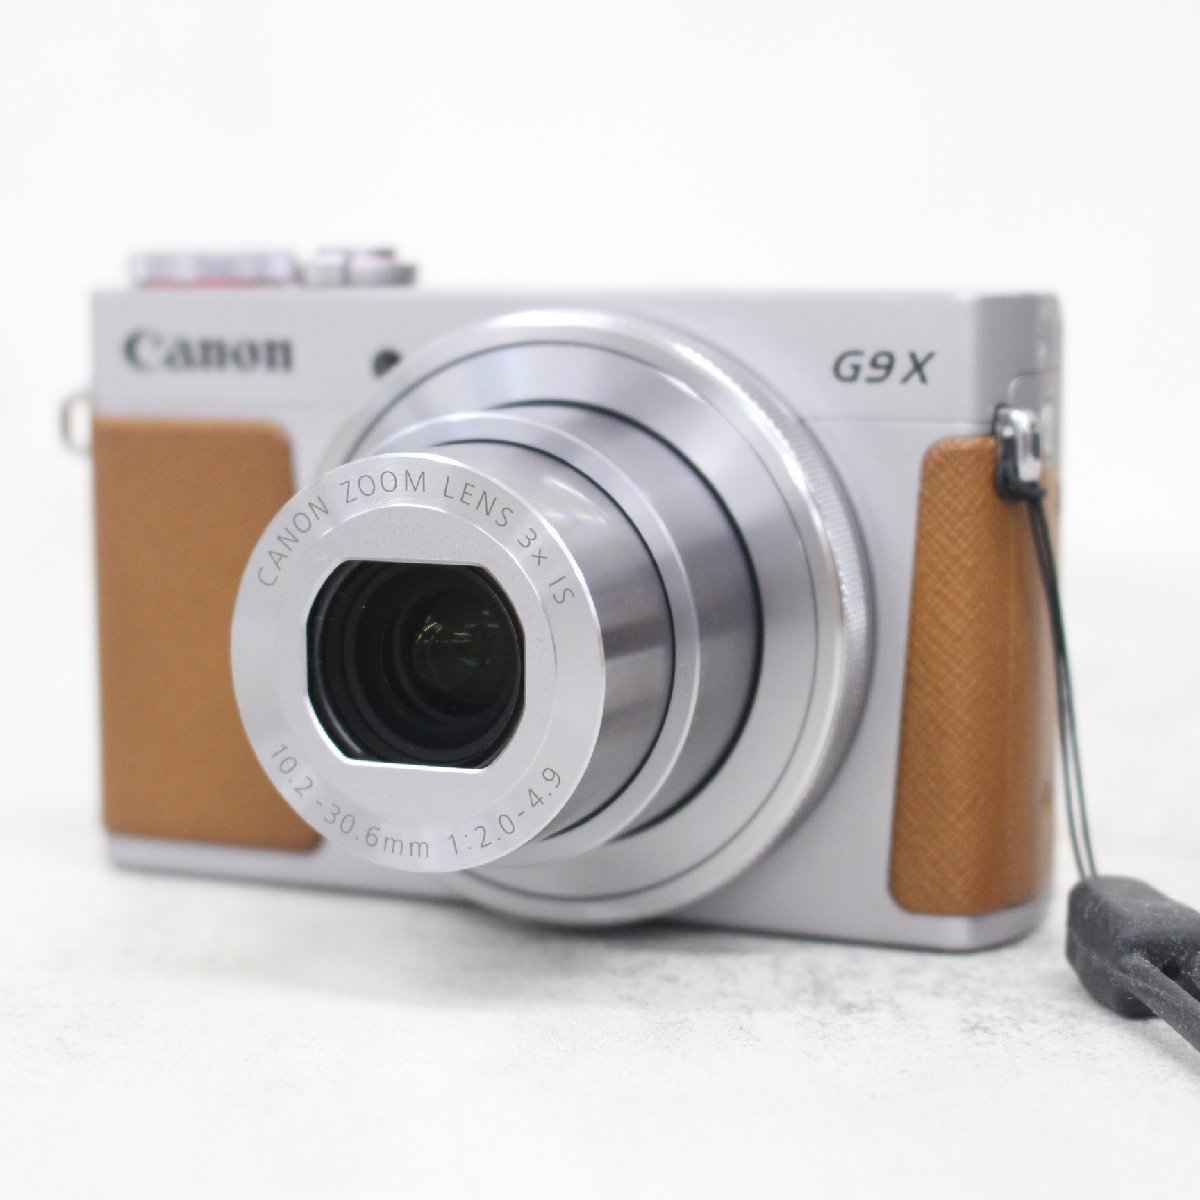 東京都新宿区にて キヤノン コンパクトデジタルカメラ PowerShot G9X  を出張買取させて頂きました。